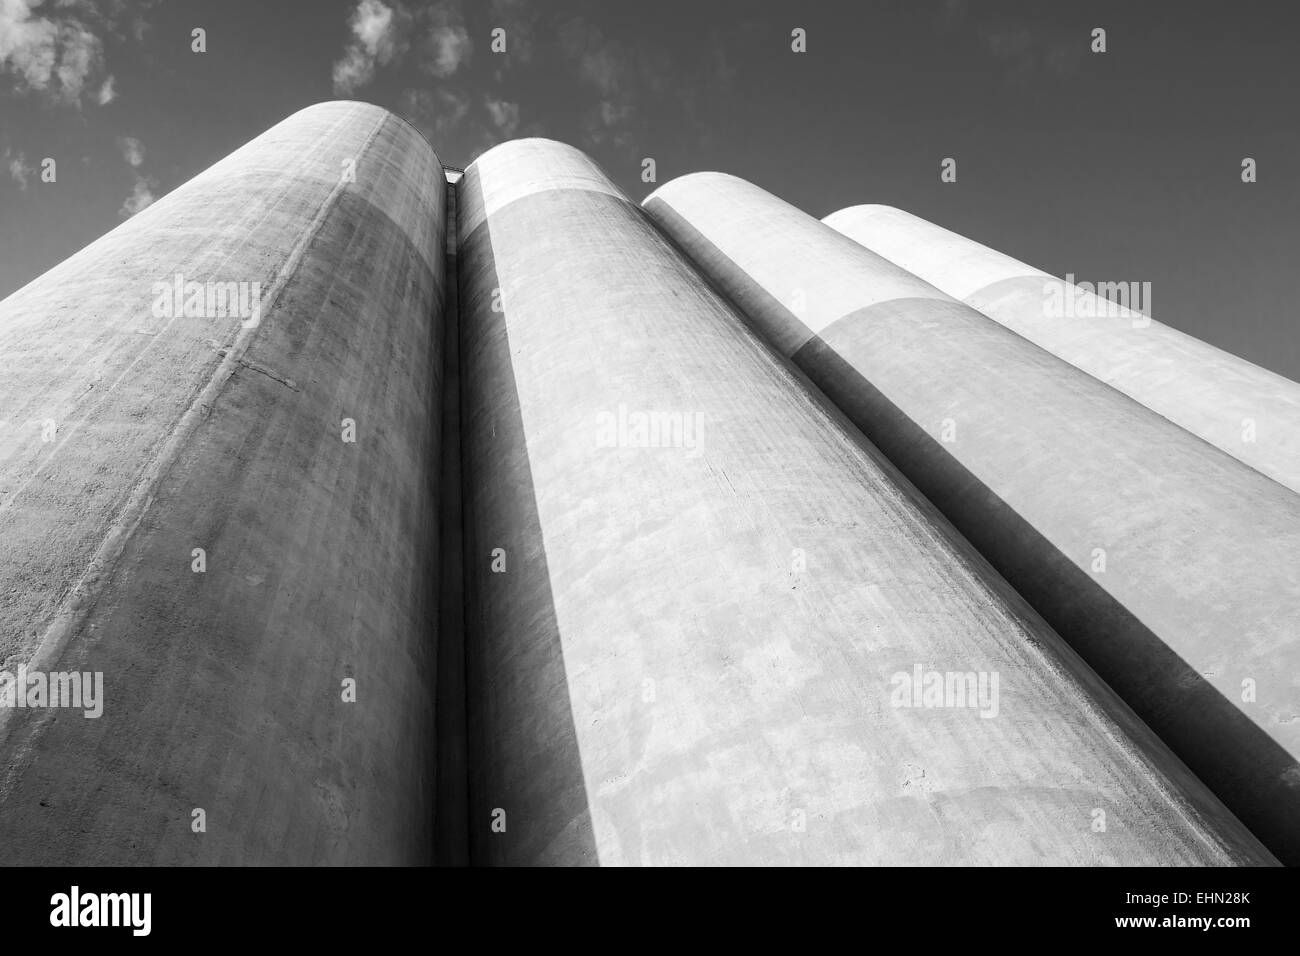 Abstrakte Industriearchitektur Fragment, große Tanks aus Beton für die Lagerung von Schüttgütern Stockfoto